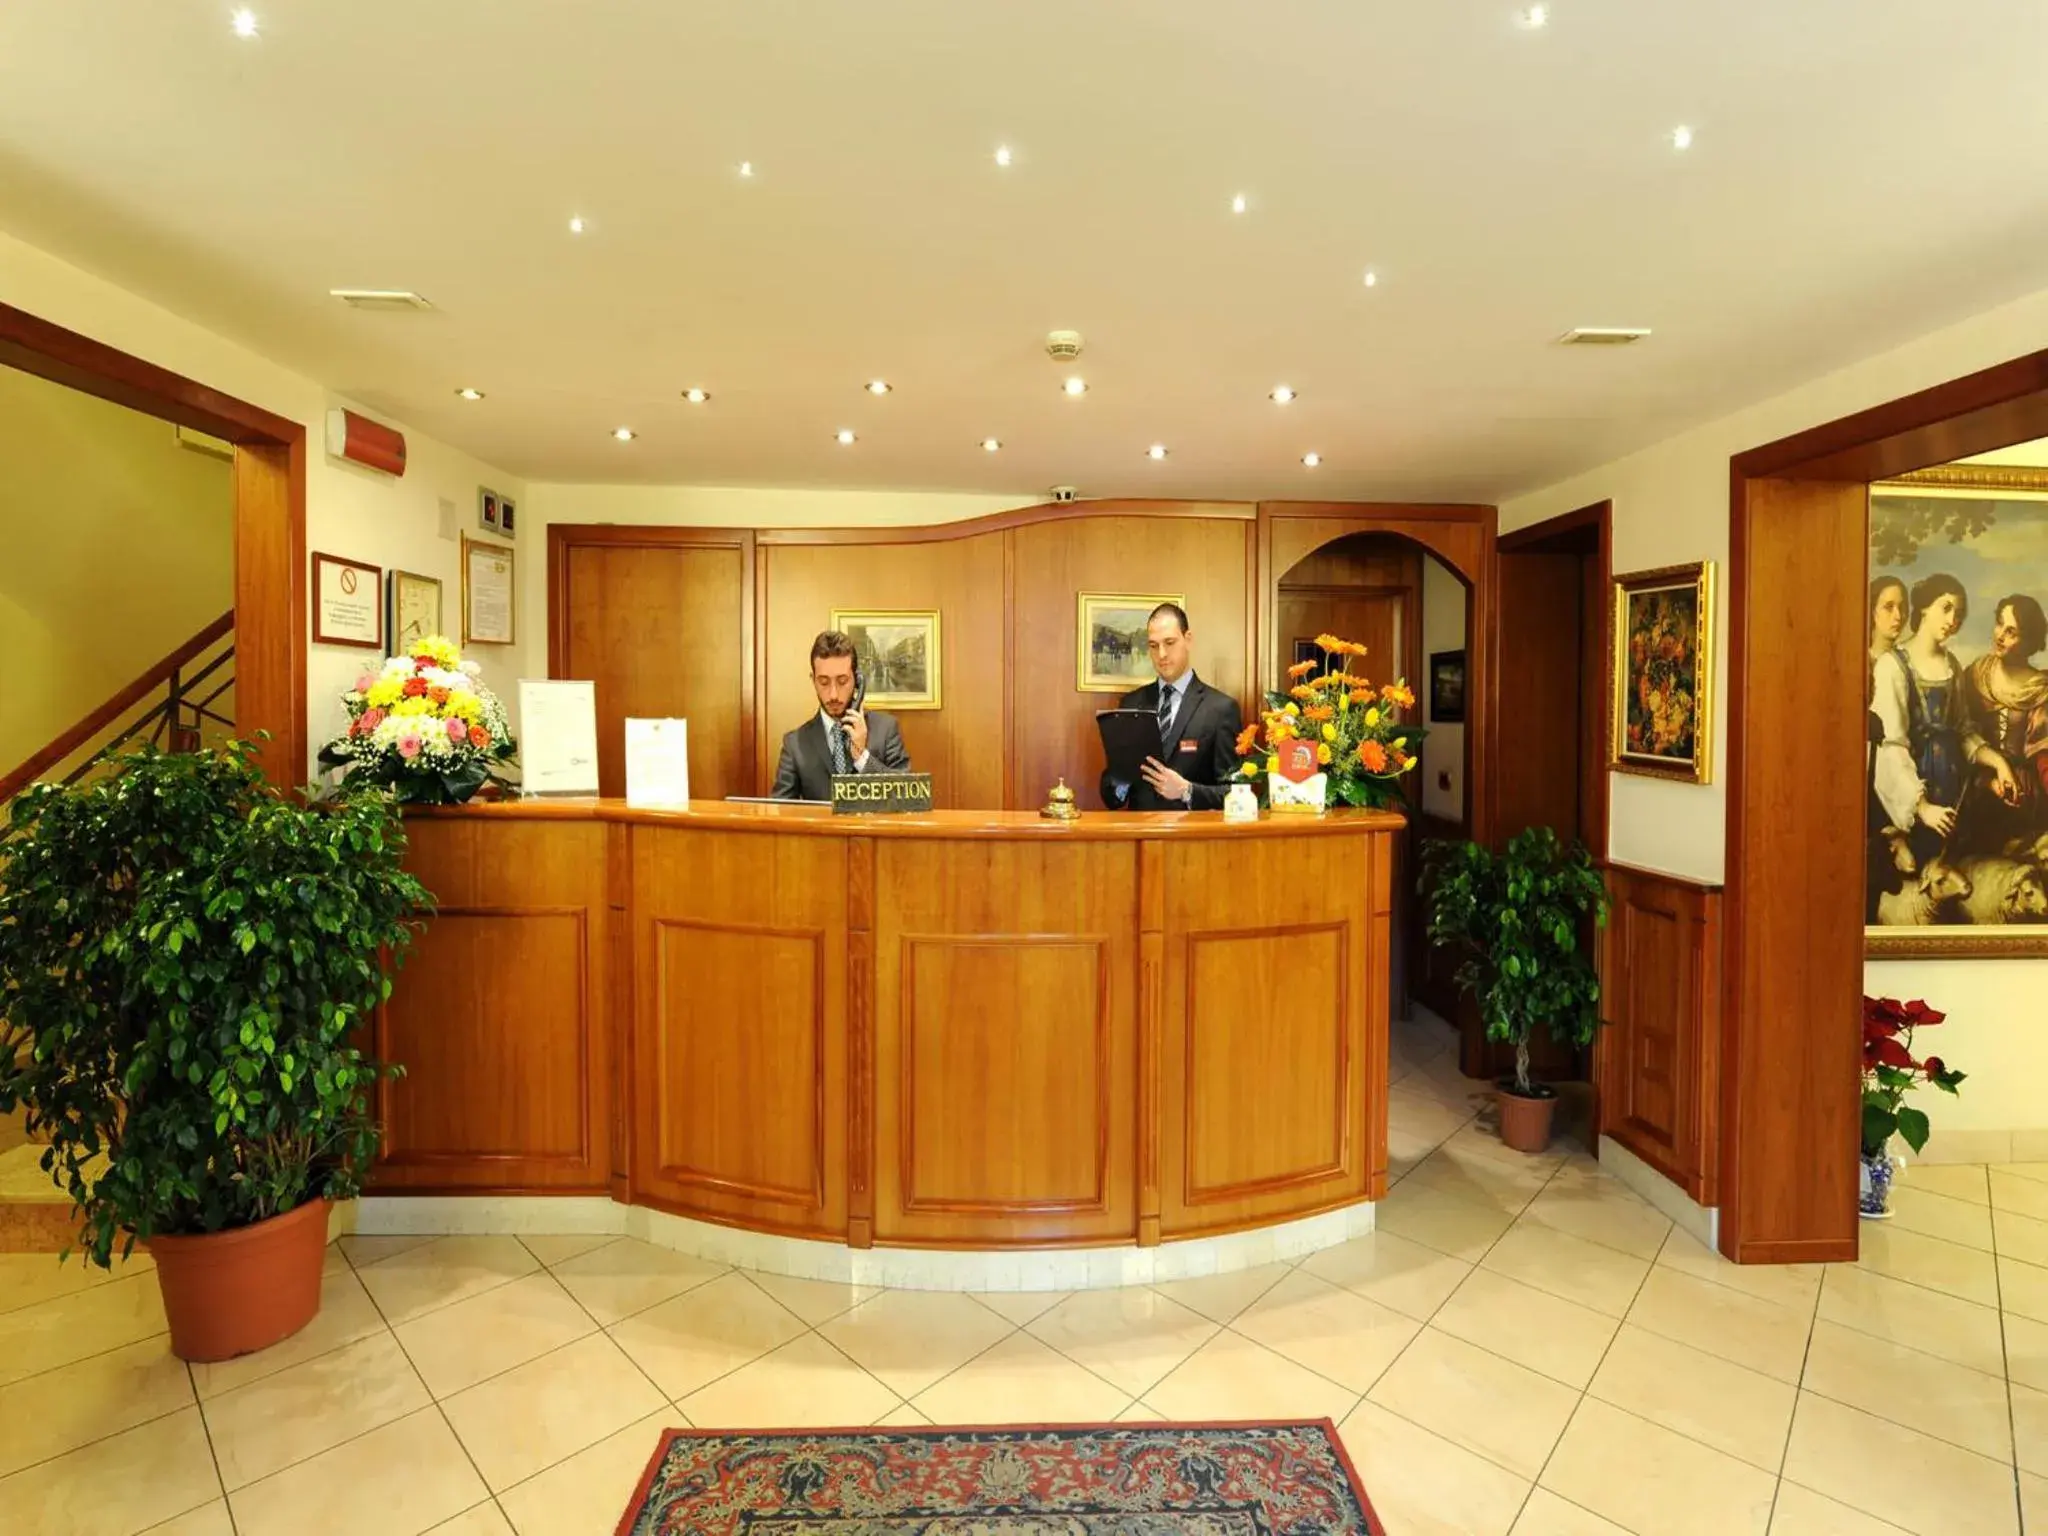 Lobby or reception, Lobby/Reception in Buono Hotel